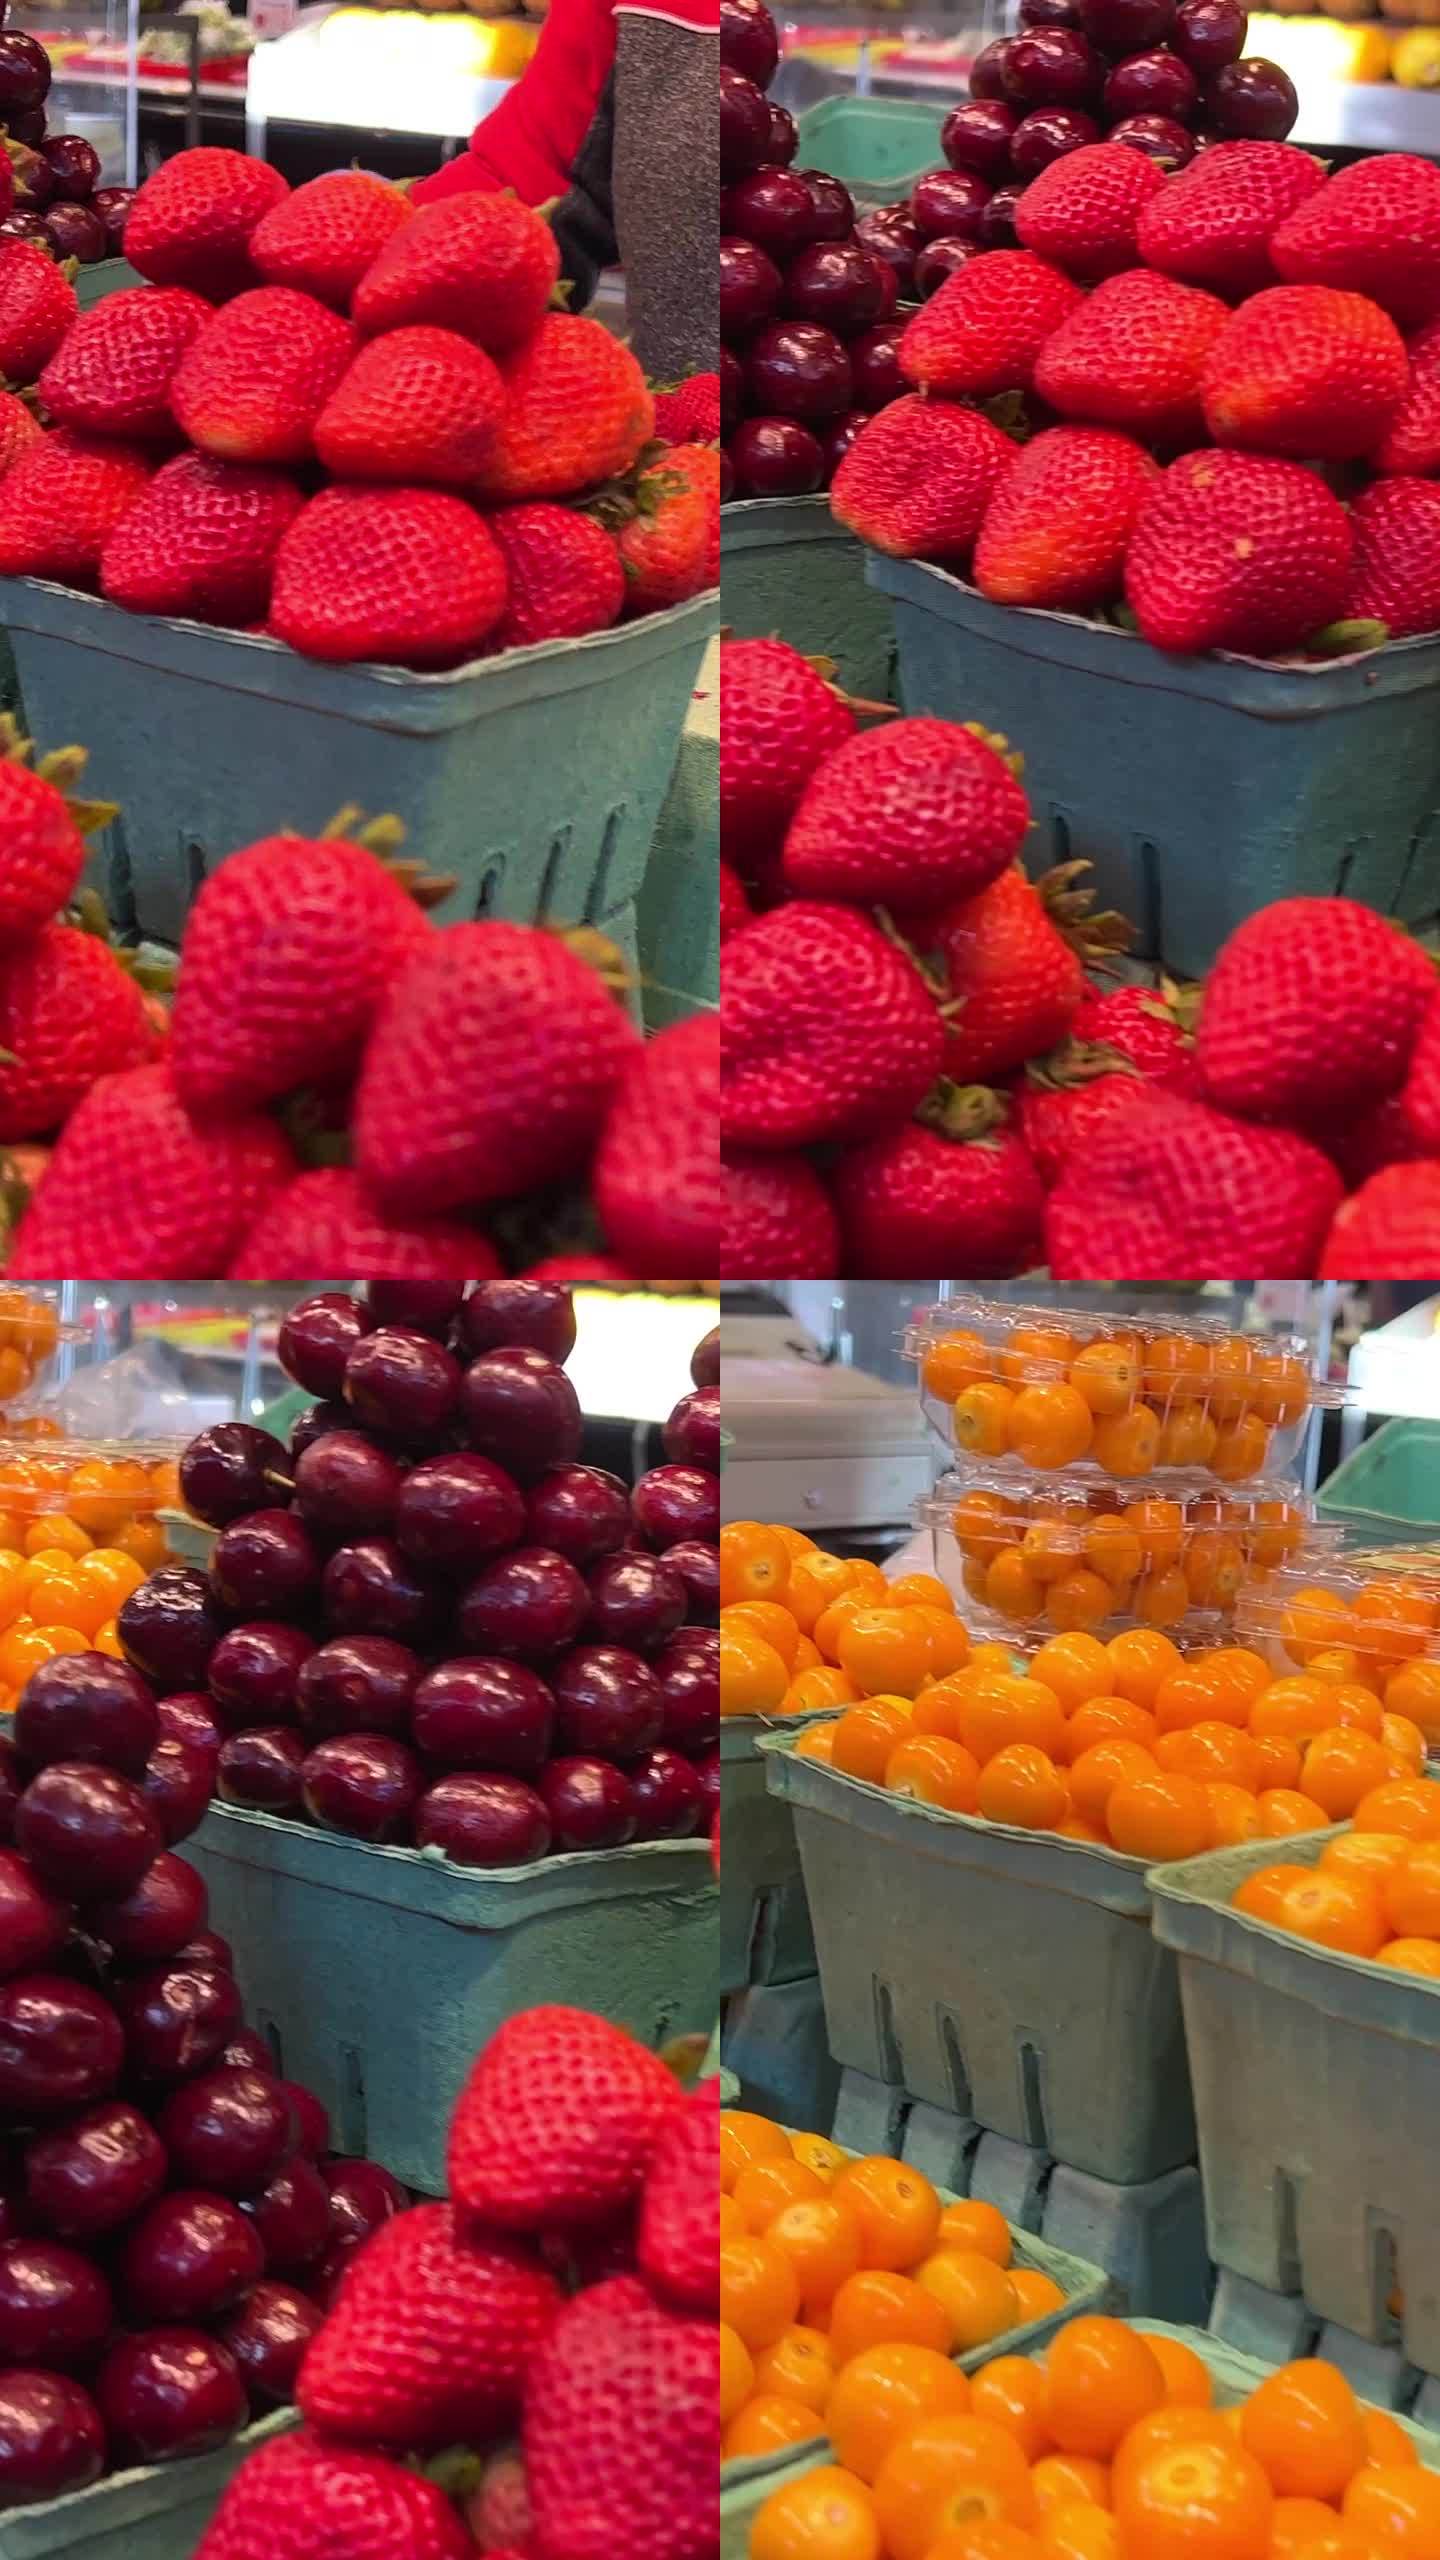 许多装有大量草莓的容器。花园草莓是一种广泛种植的草莓属杂交品种。